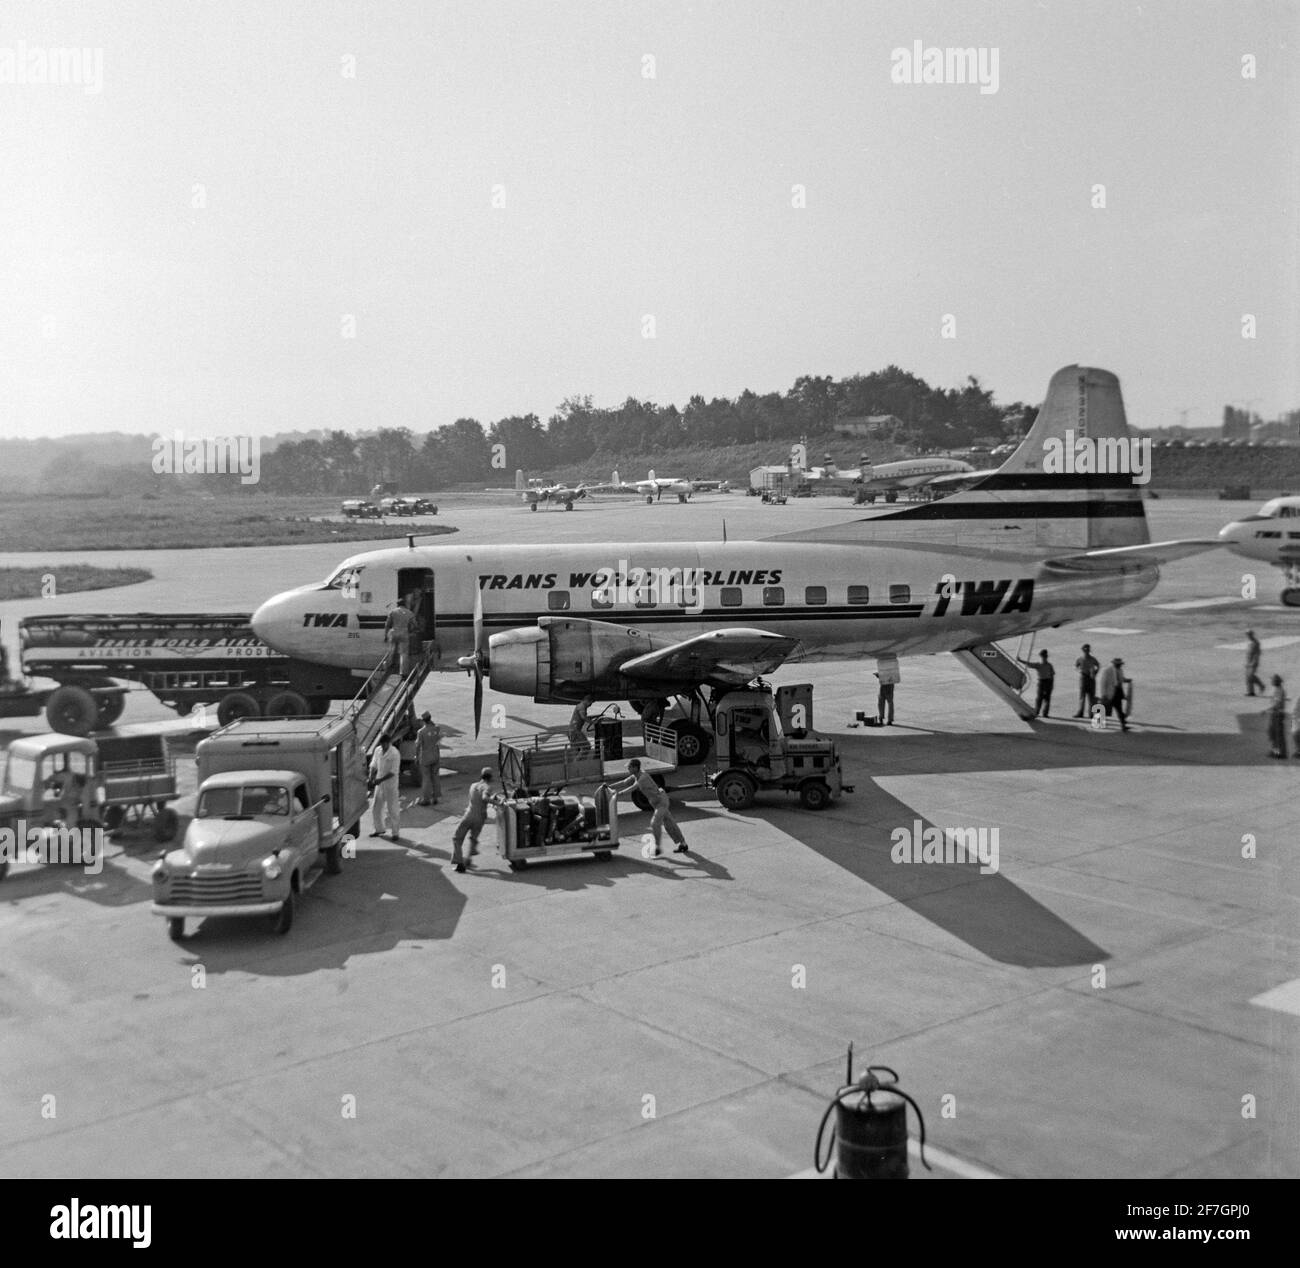 Une photographie en noir et blanc vintage de 1956 montrant un avion TWA, Trans World Airlines, Martin 202, numéro de série N93205, dans un aéroport aux États-Unis. L'avion est en préparation pour le vol et est entouré d'une variété de véhicules et d'ouvriers d'aéroport. Banque D'Images